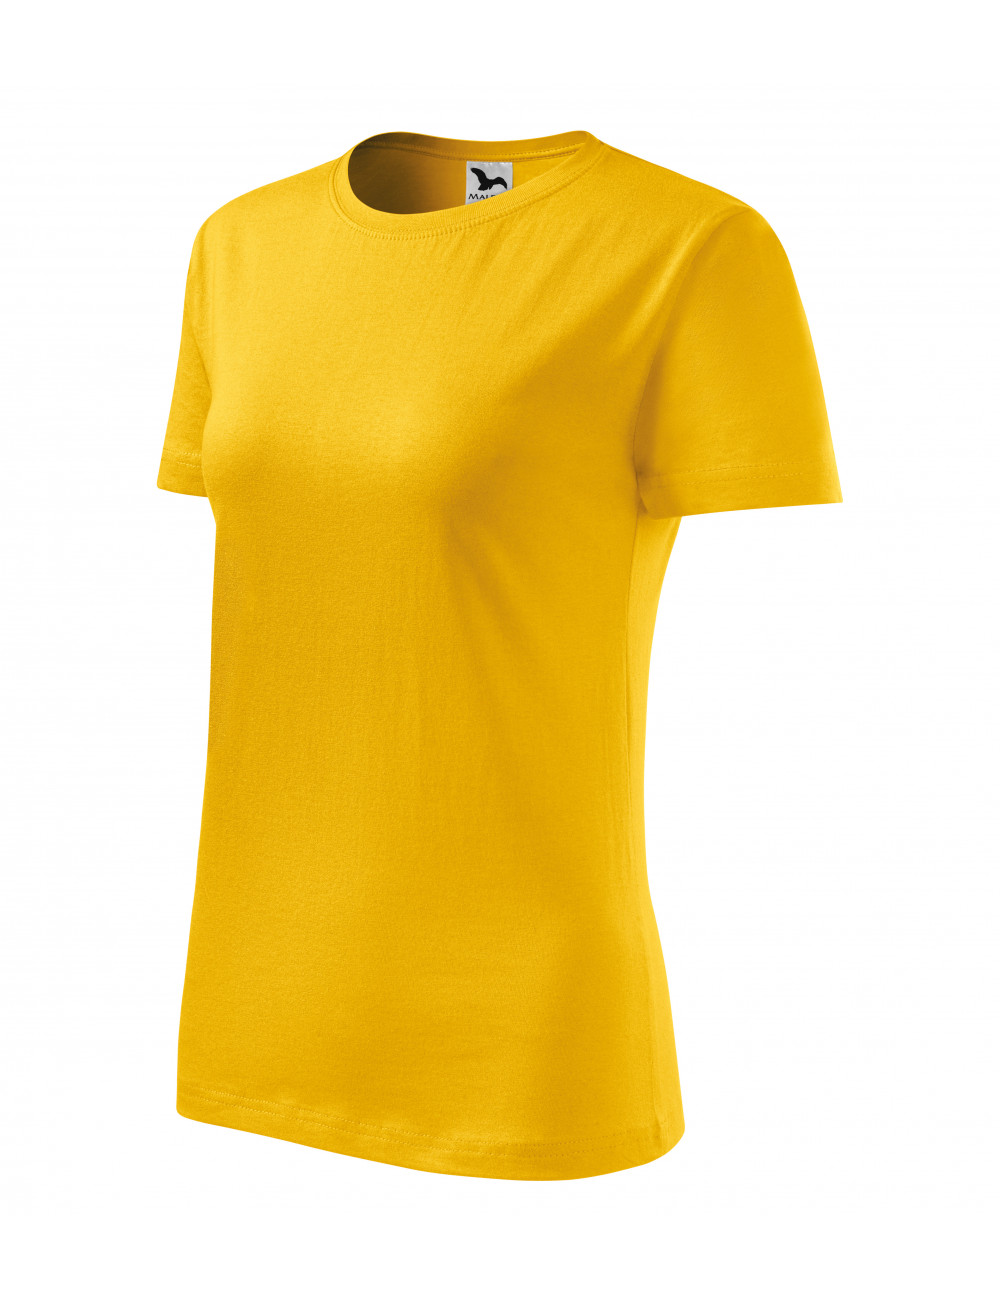 Koszulka damska classic new 133 żółty Adler Malfini